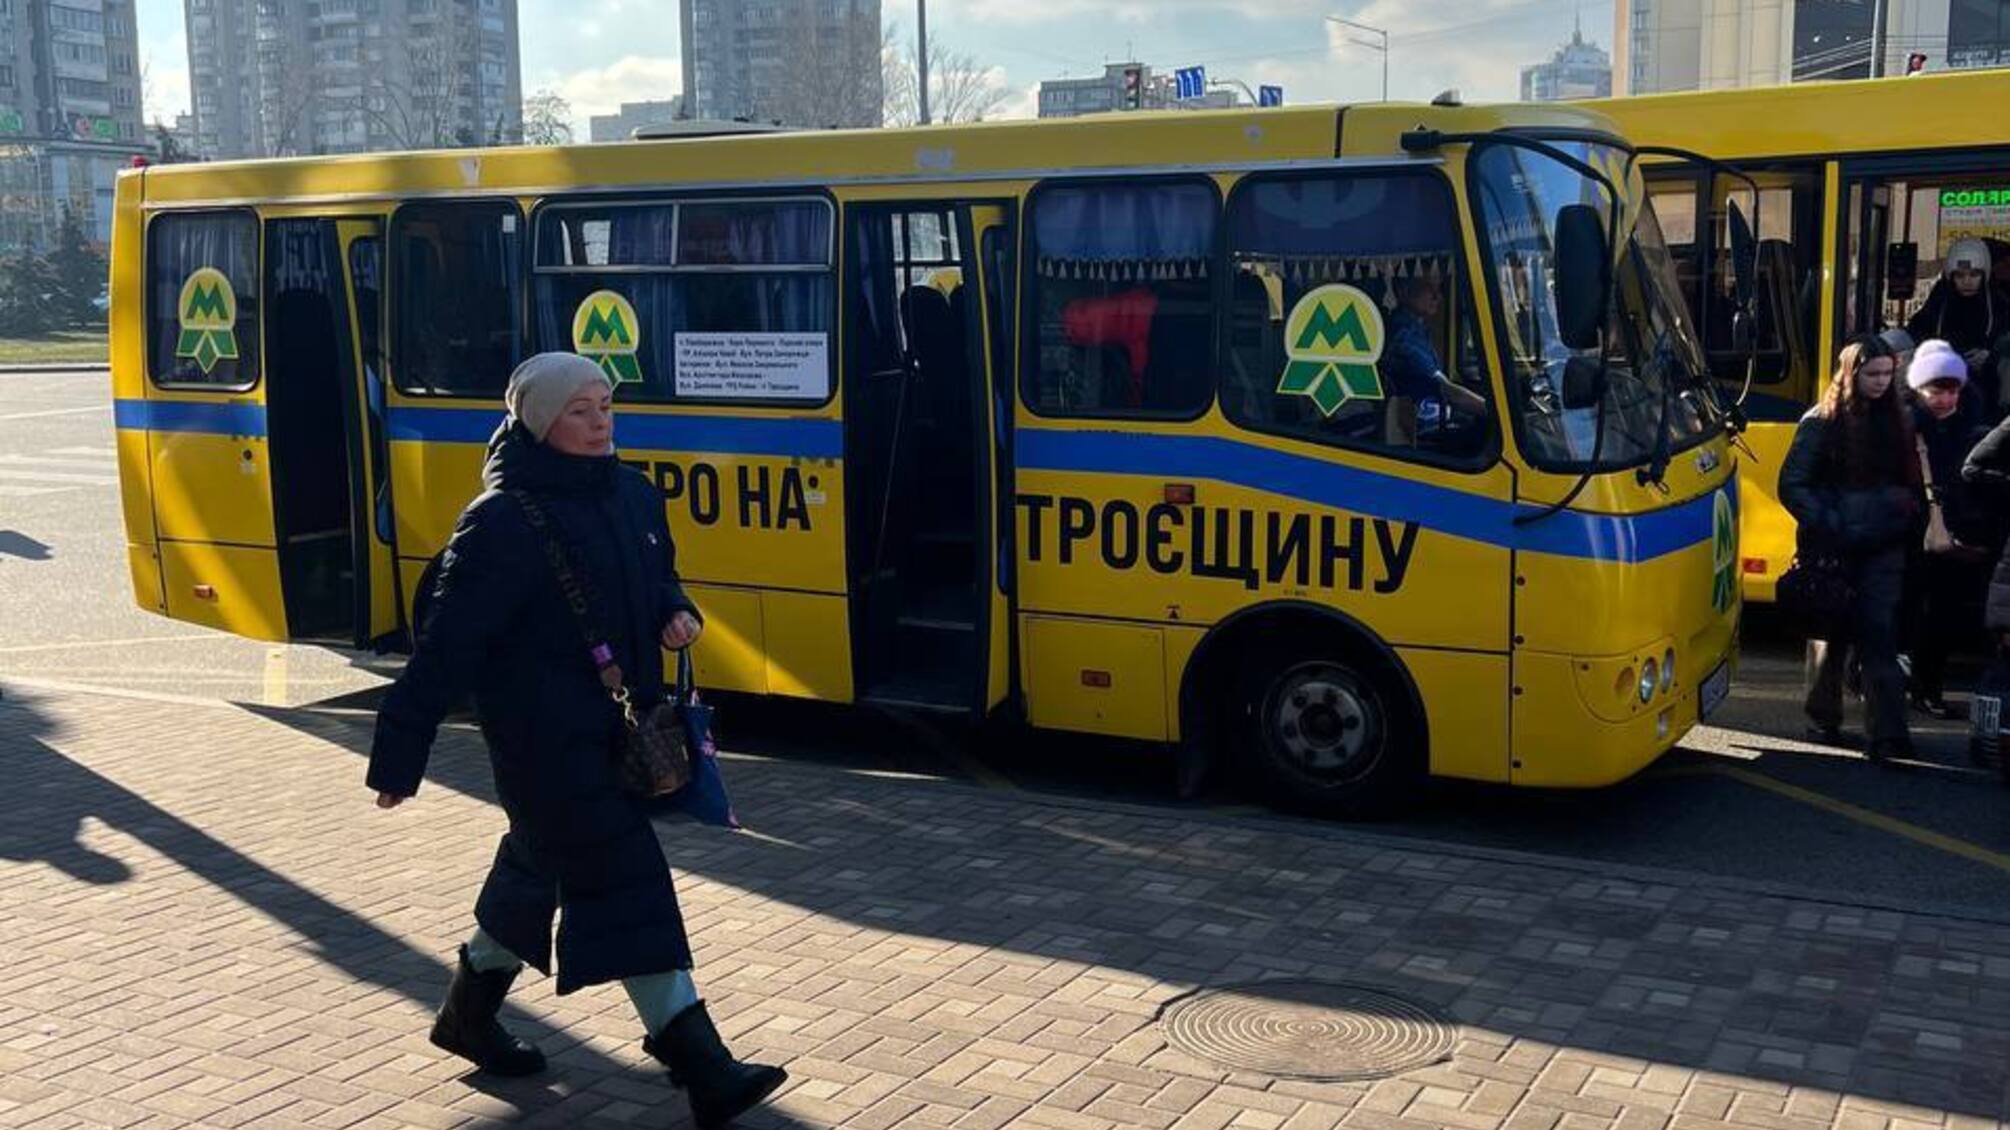 В Киеве запустили 'метро на Троещину'? Местные жители бурно отреагировали в соцсетях